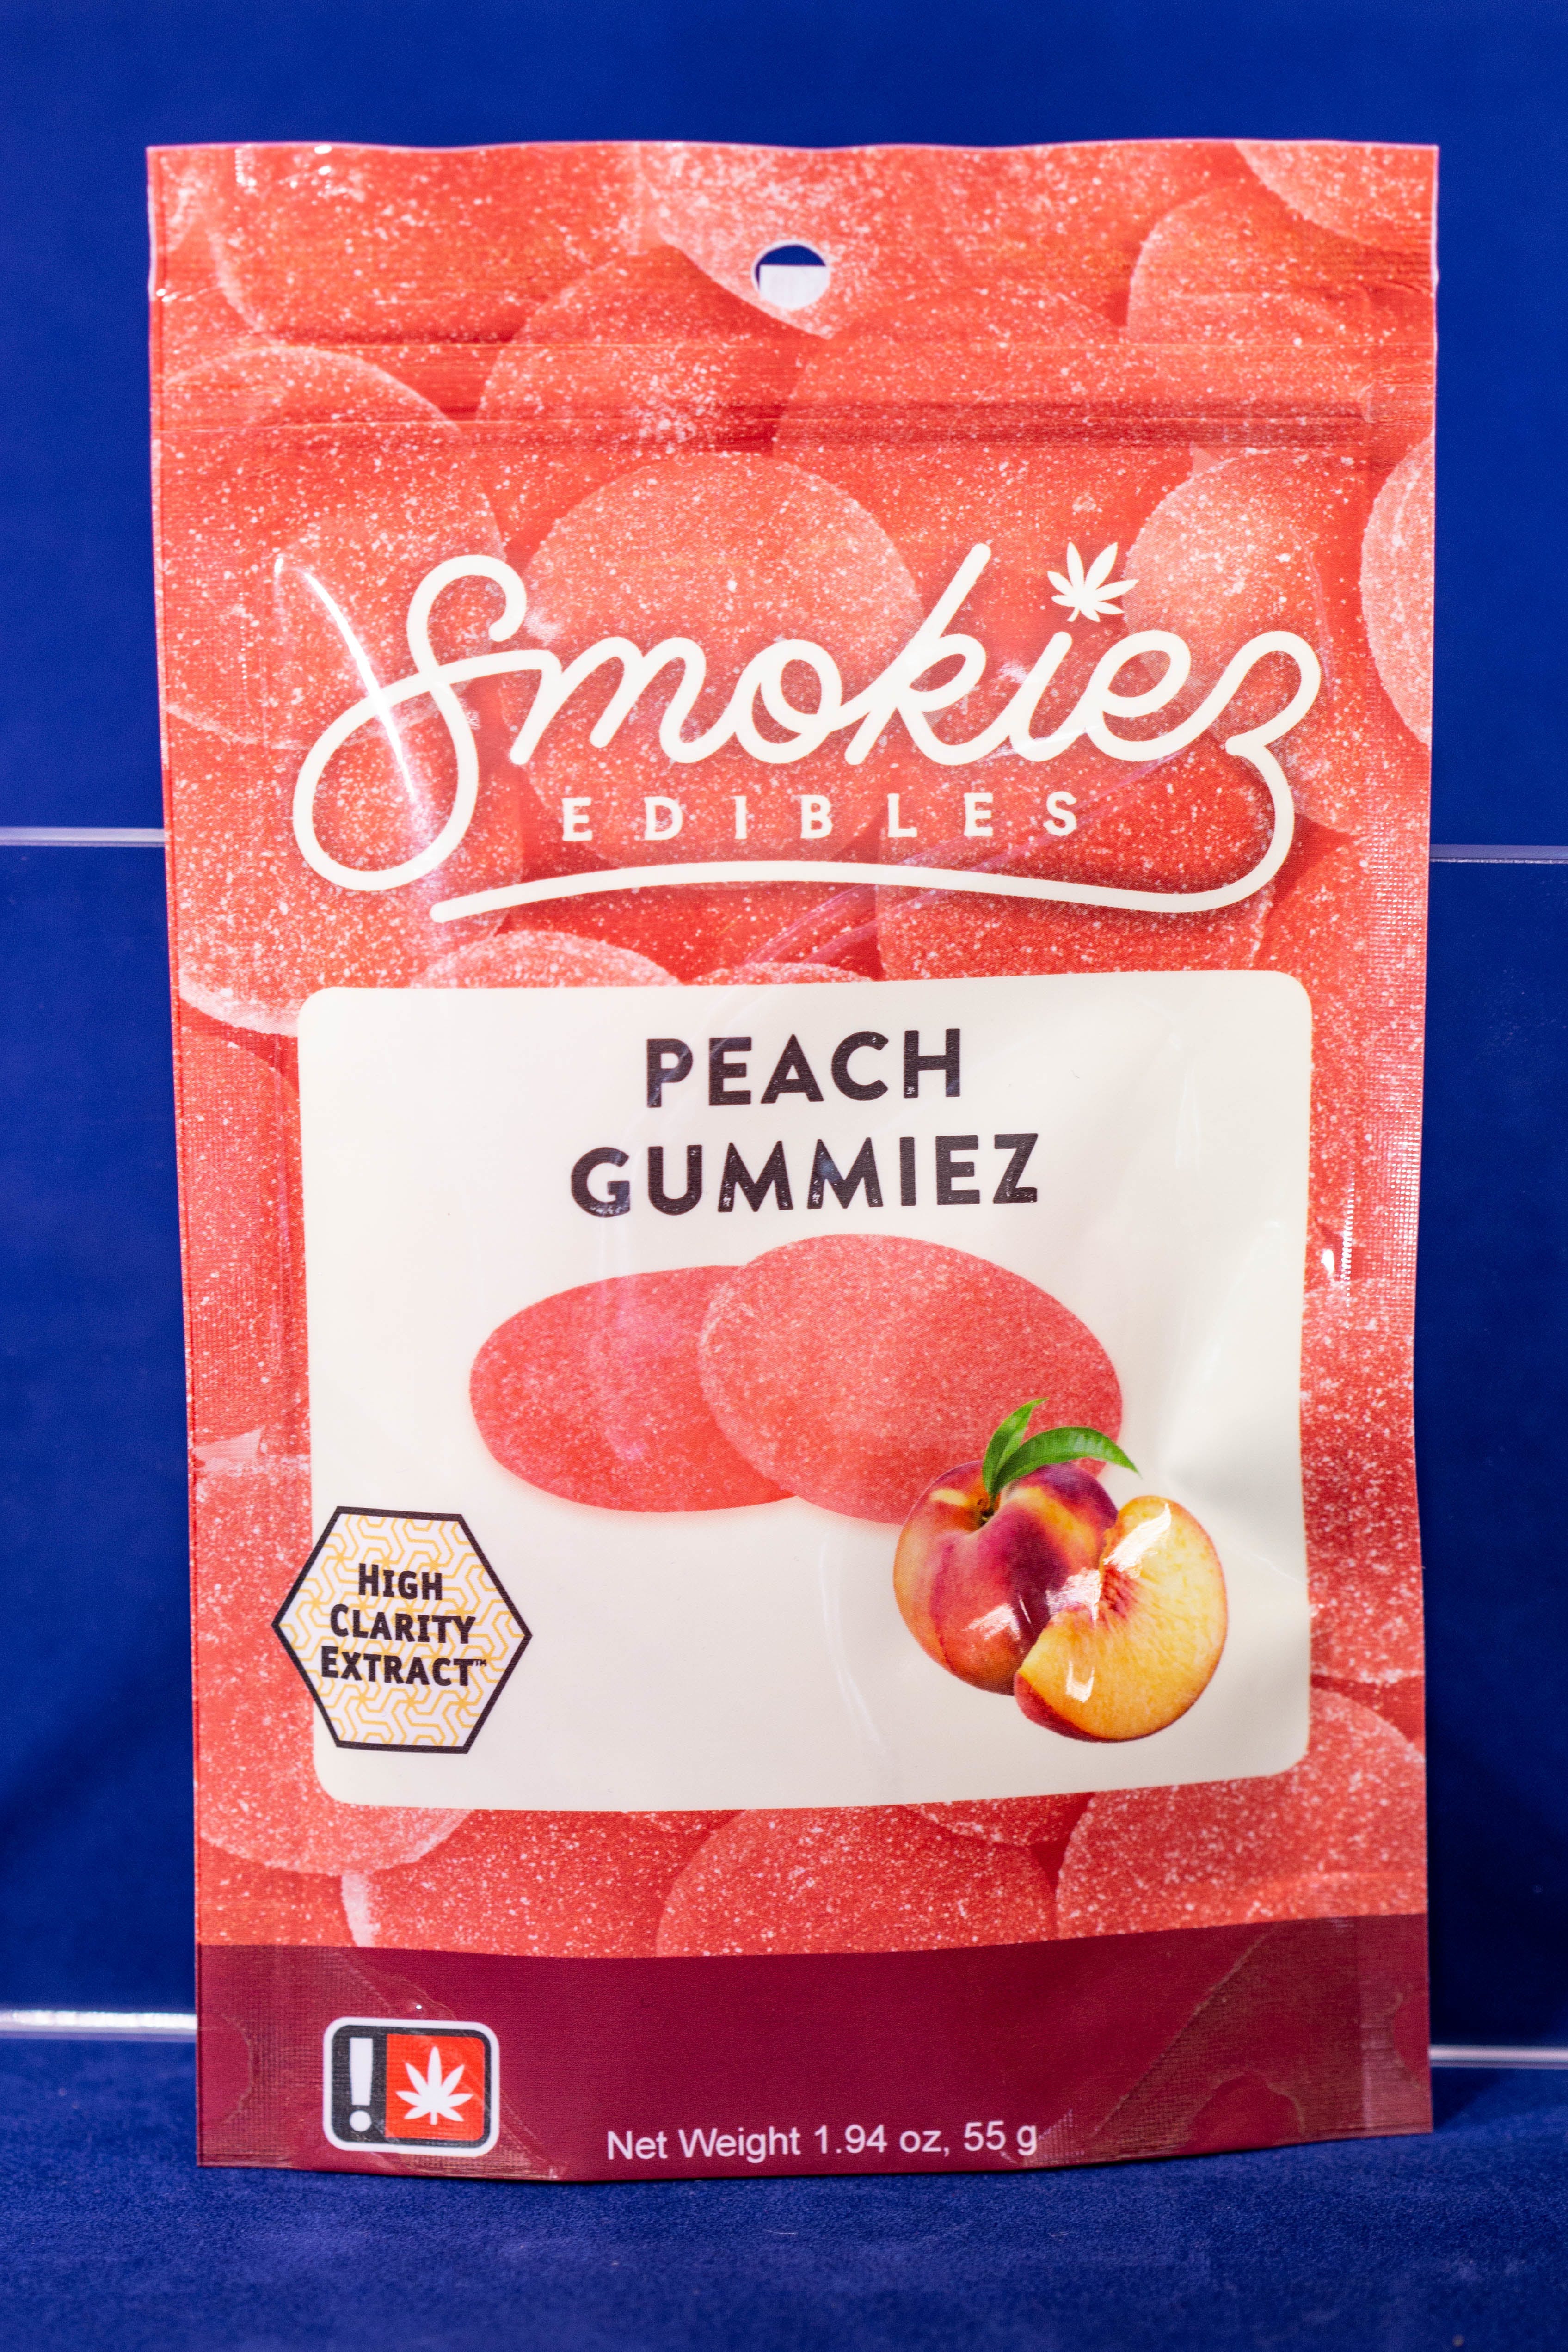 edible-peach-gummiez-by-smokiez